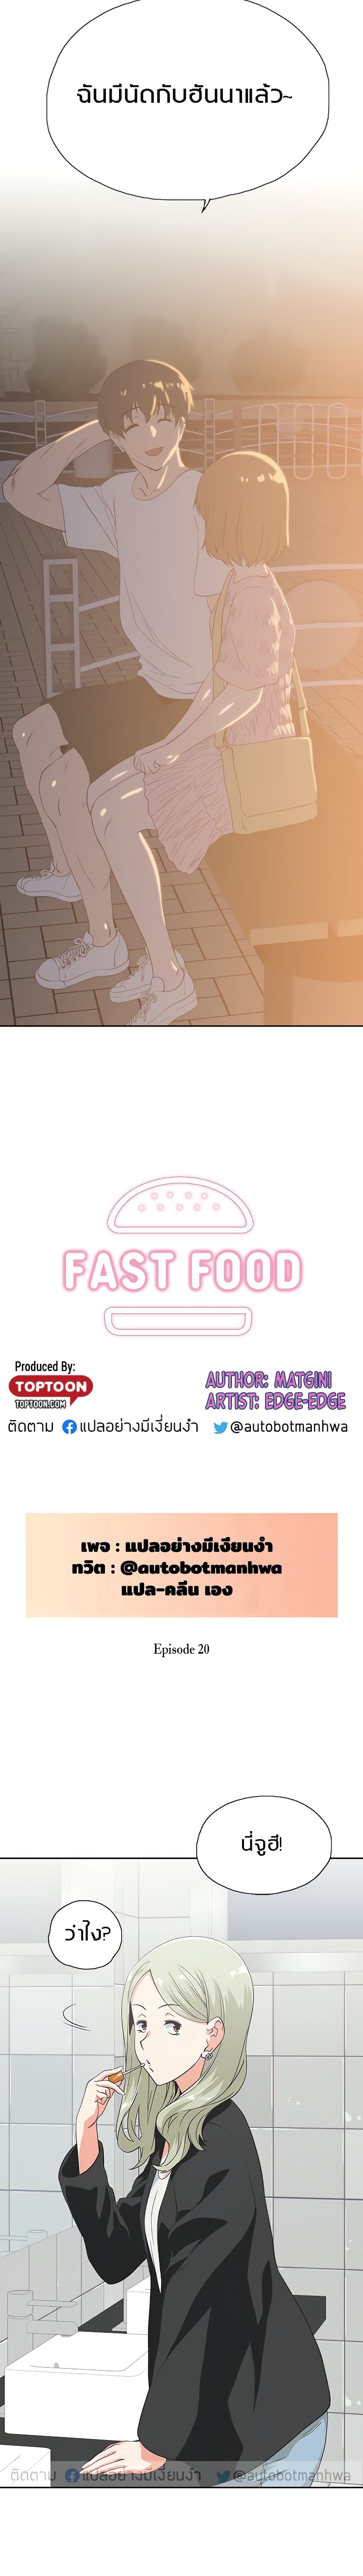 Fast Food 20 02